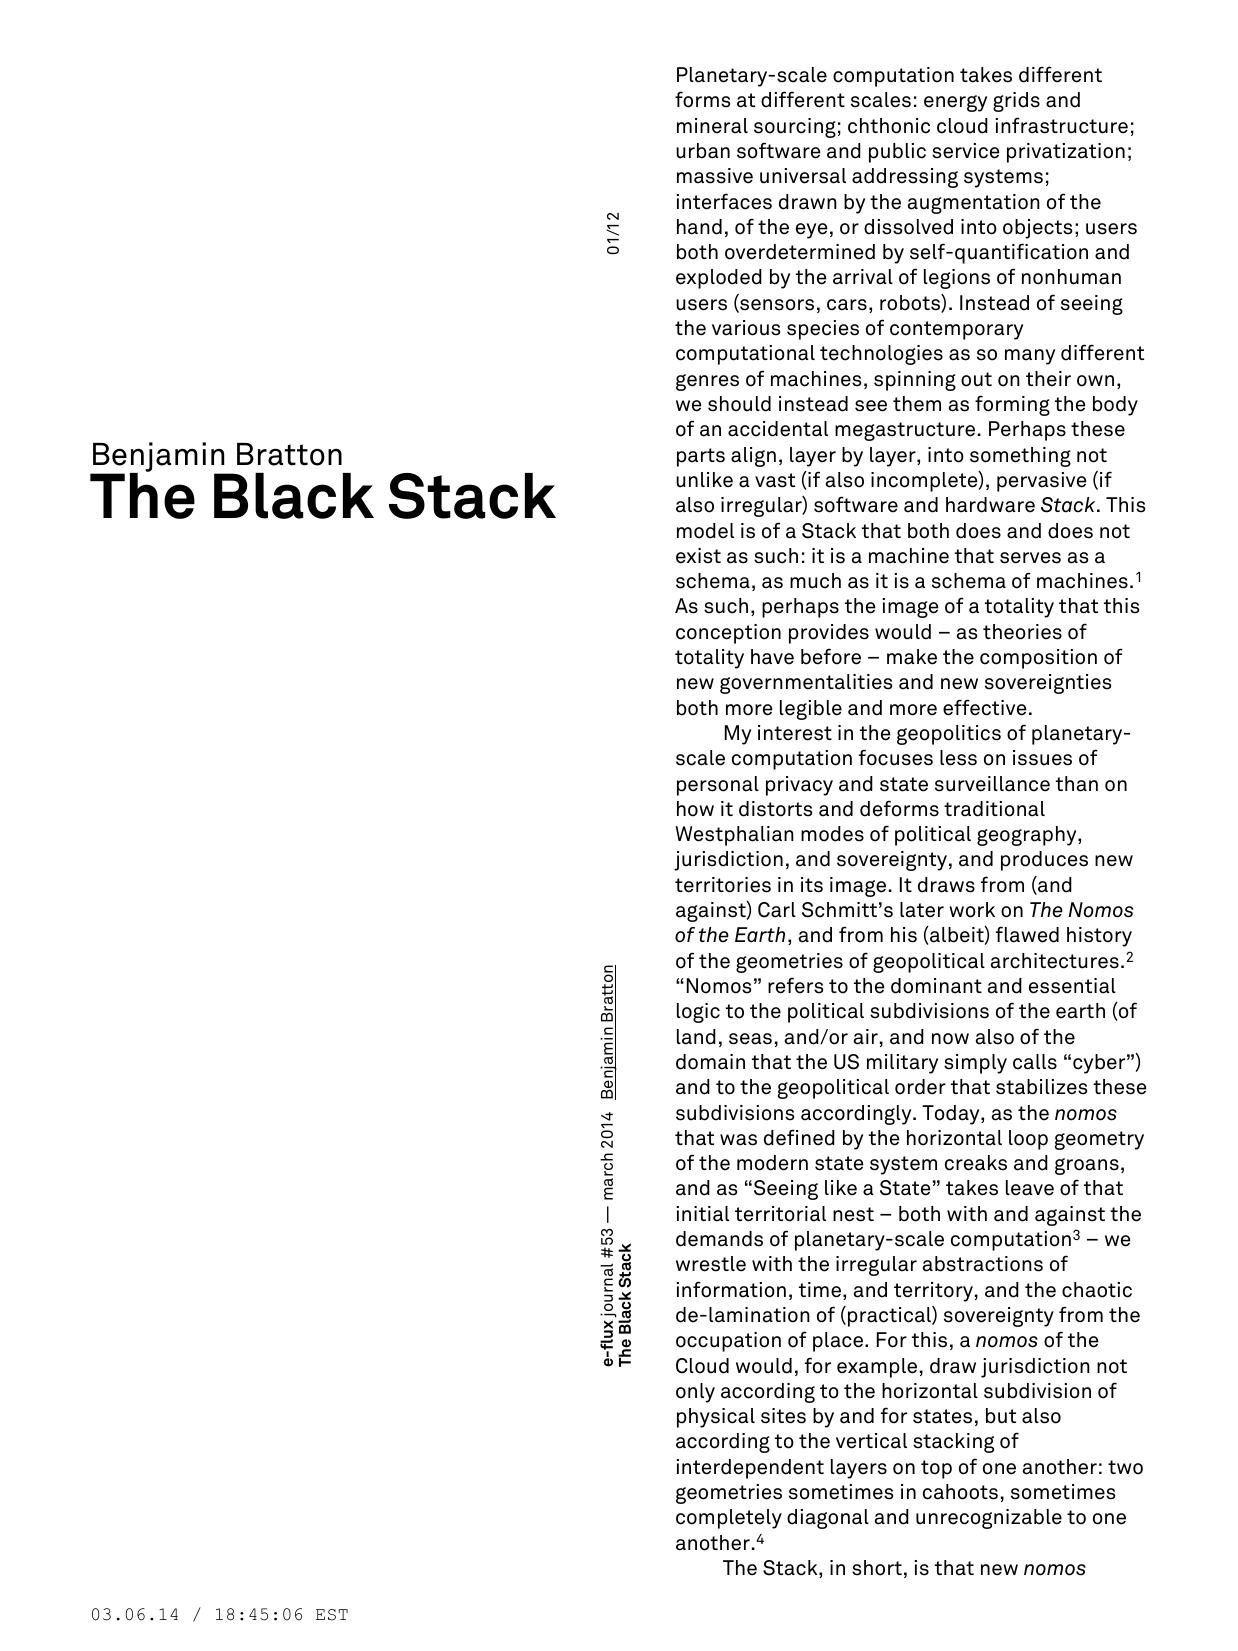 The Black Stack - eflux